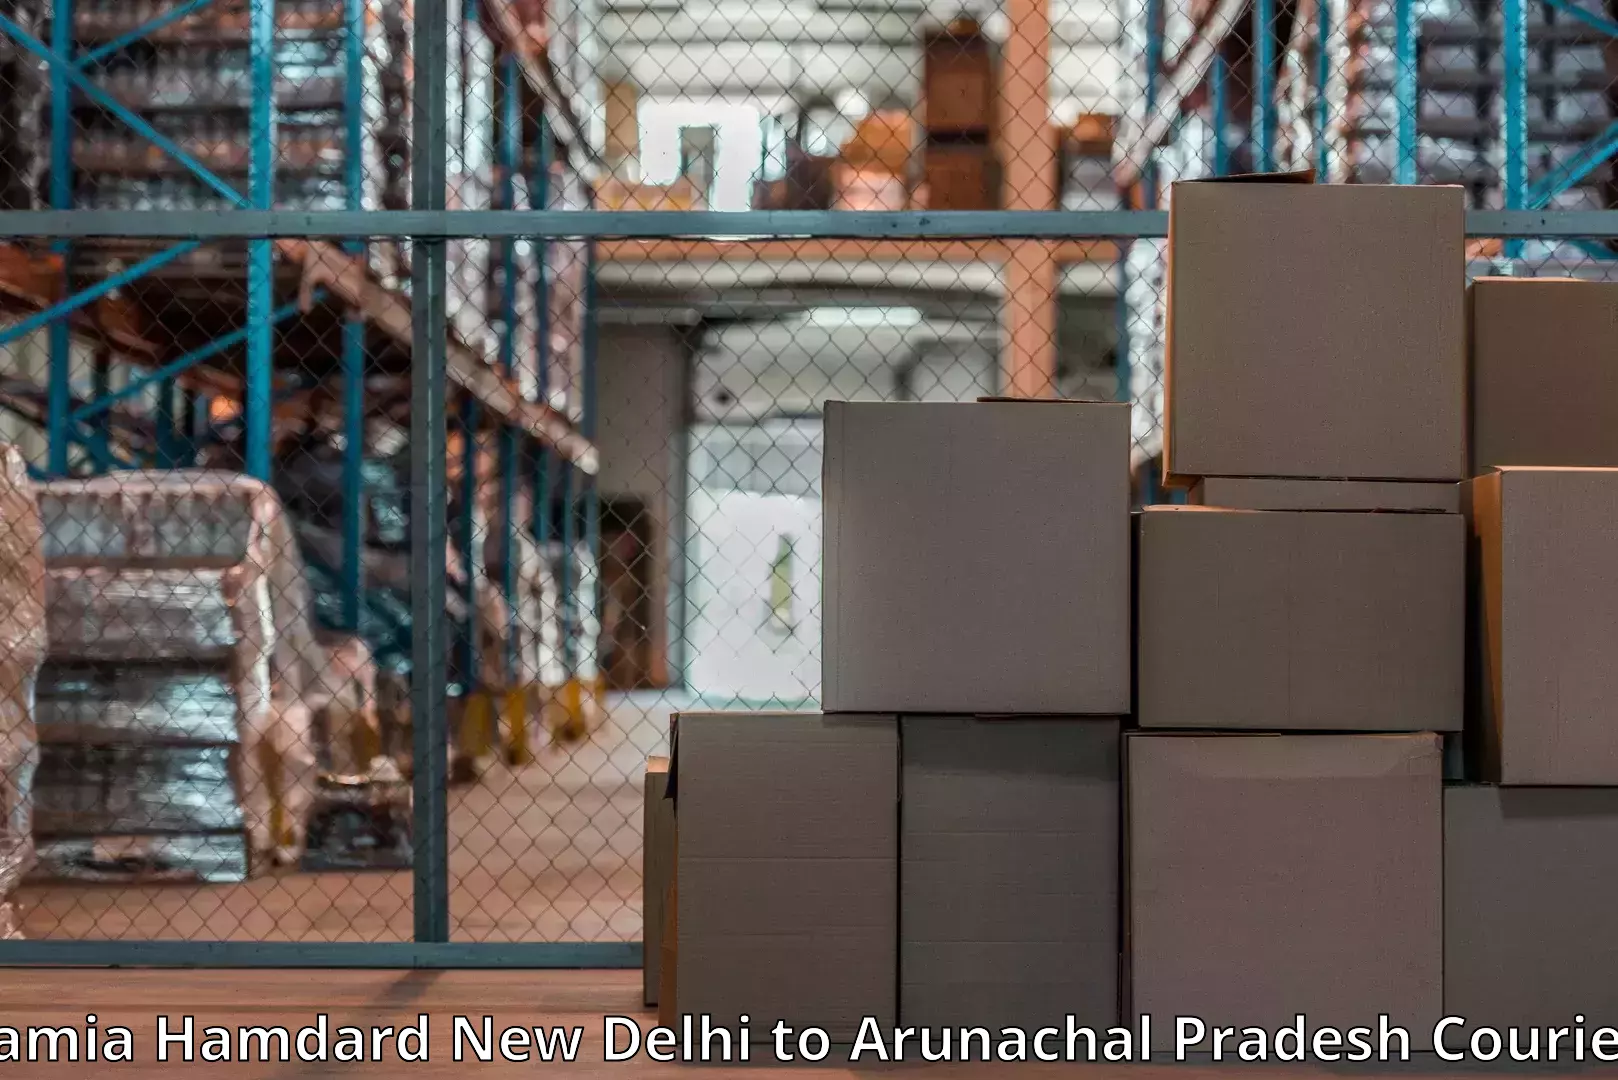 Efficient packing services Jamia Hamdard New Delhi to Arunachal Pradesh